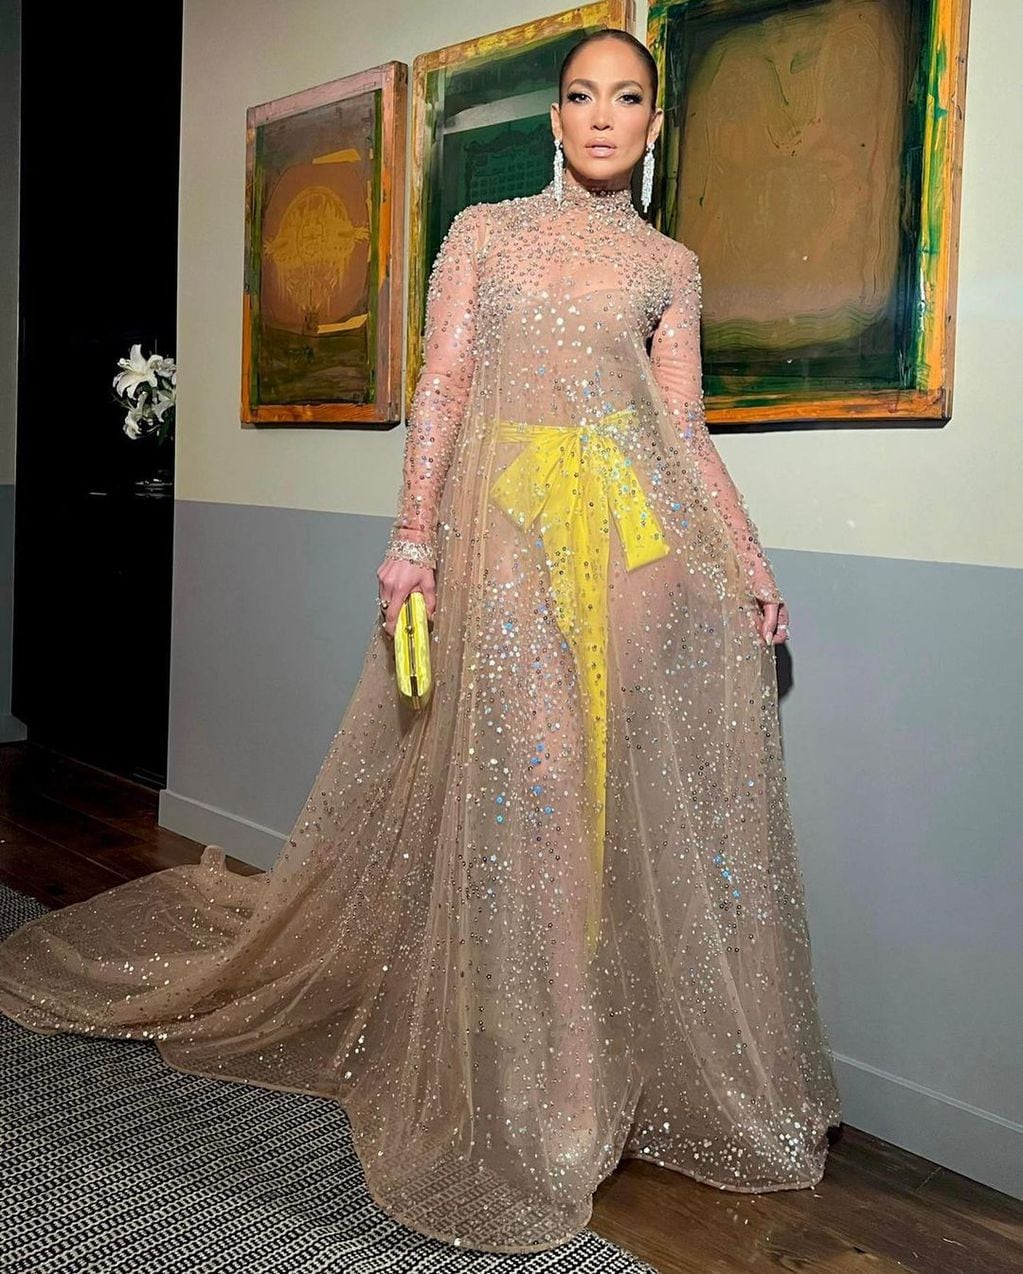 Jennifer López en vestido de gala con transparencia a juego con bolso y lazo en amarillo satín